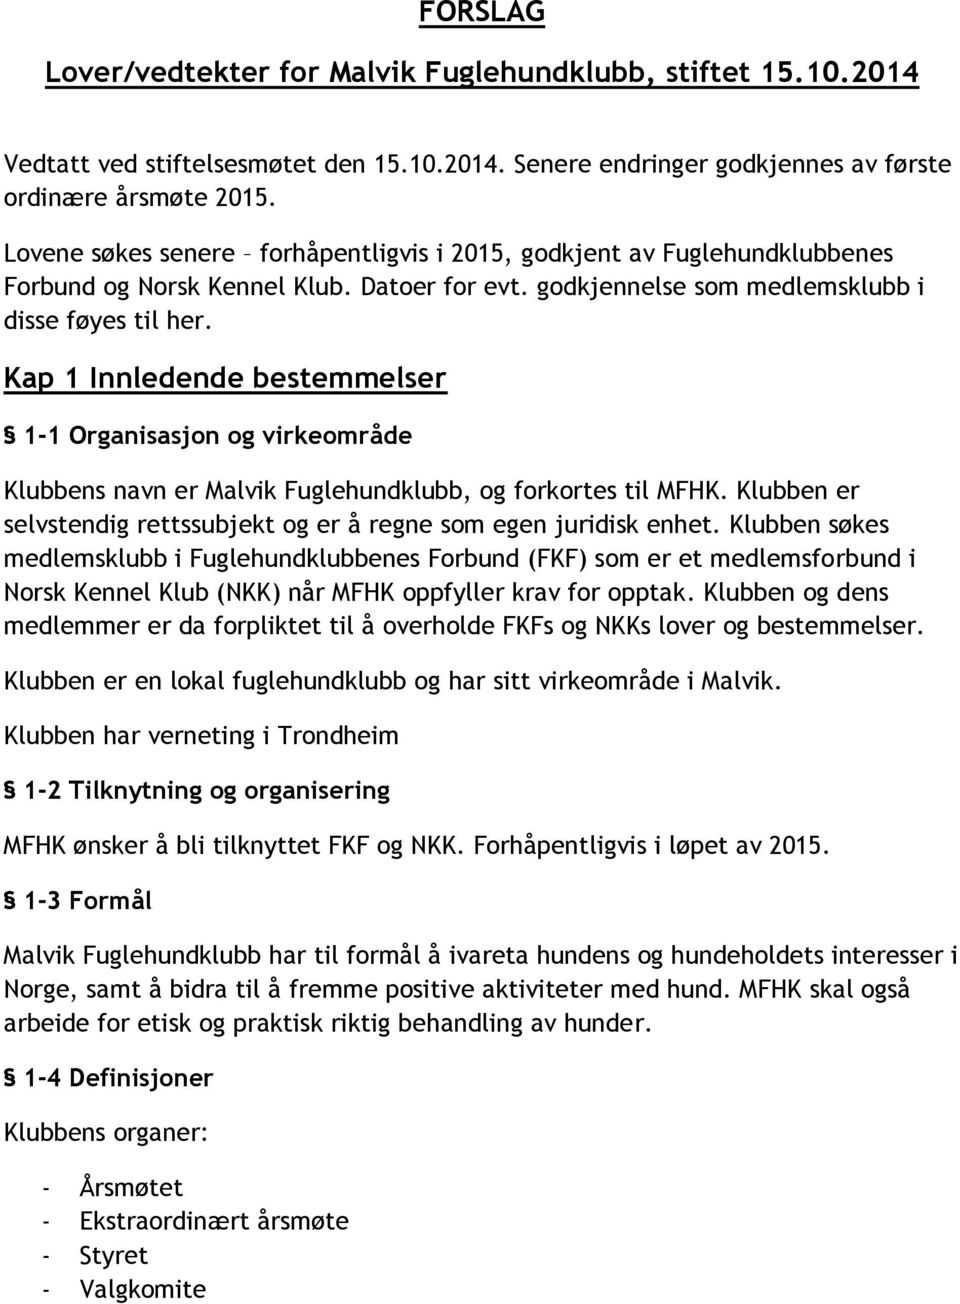 Kap 1 Innledende bestemmelser 1-1 Organisasjon og virkeområde Klubbens navn er Malvik Fuglehundklubb, og forkortes til MFHK. Klubben er selvstendig rettssubjekt og er å regne som egen juridisk enhet.